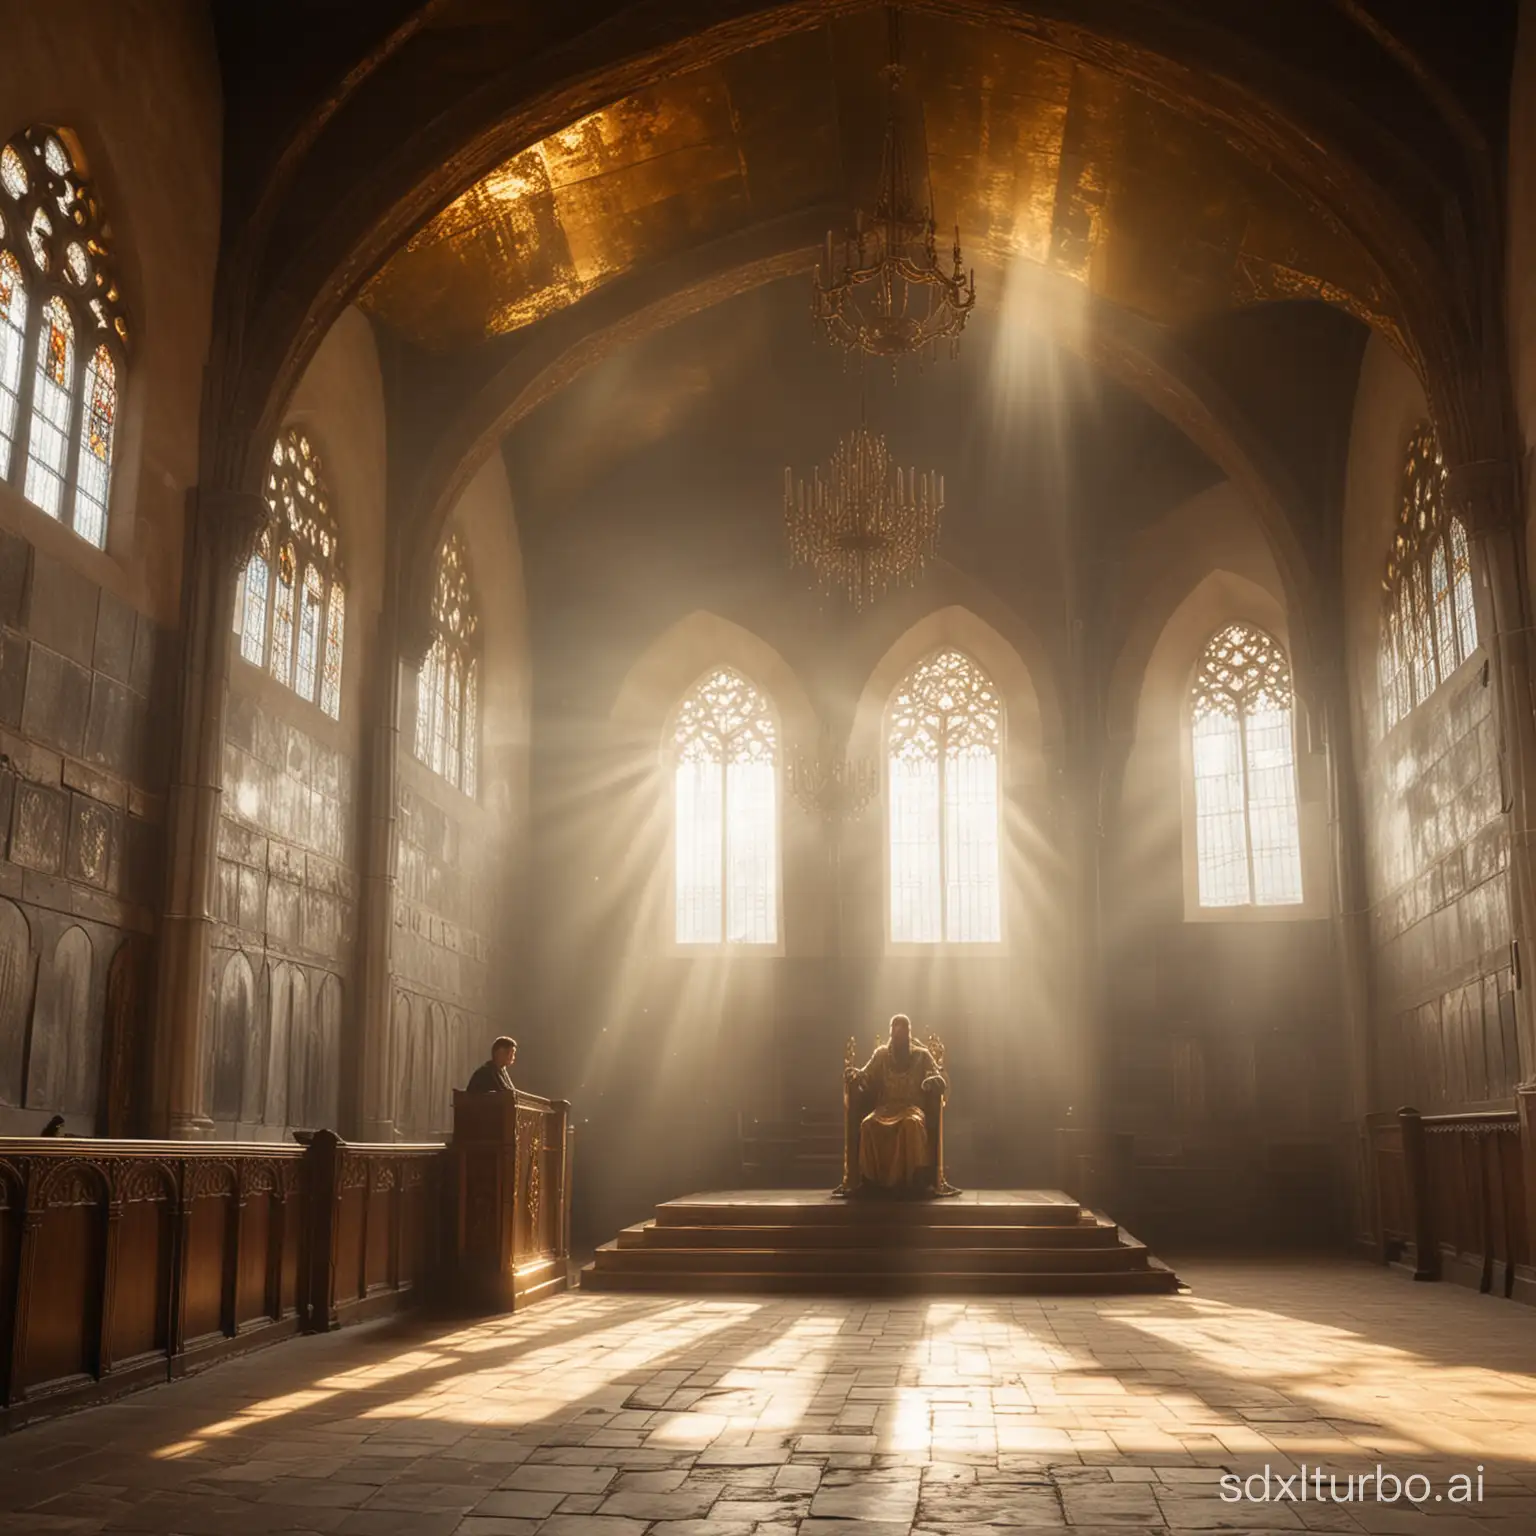 Просторный церковный зал, на высокой платформе находится трон из золота, на нем восседает мужчина, его лицо скрыто лучами солнца, которое пробивается через окно за кадром, средневековый стиль